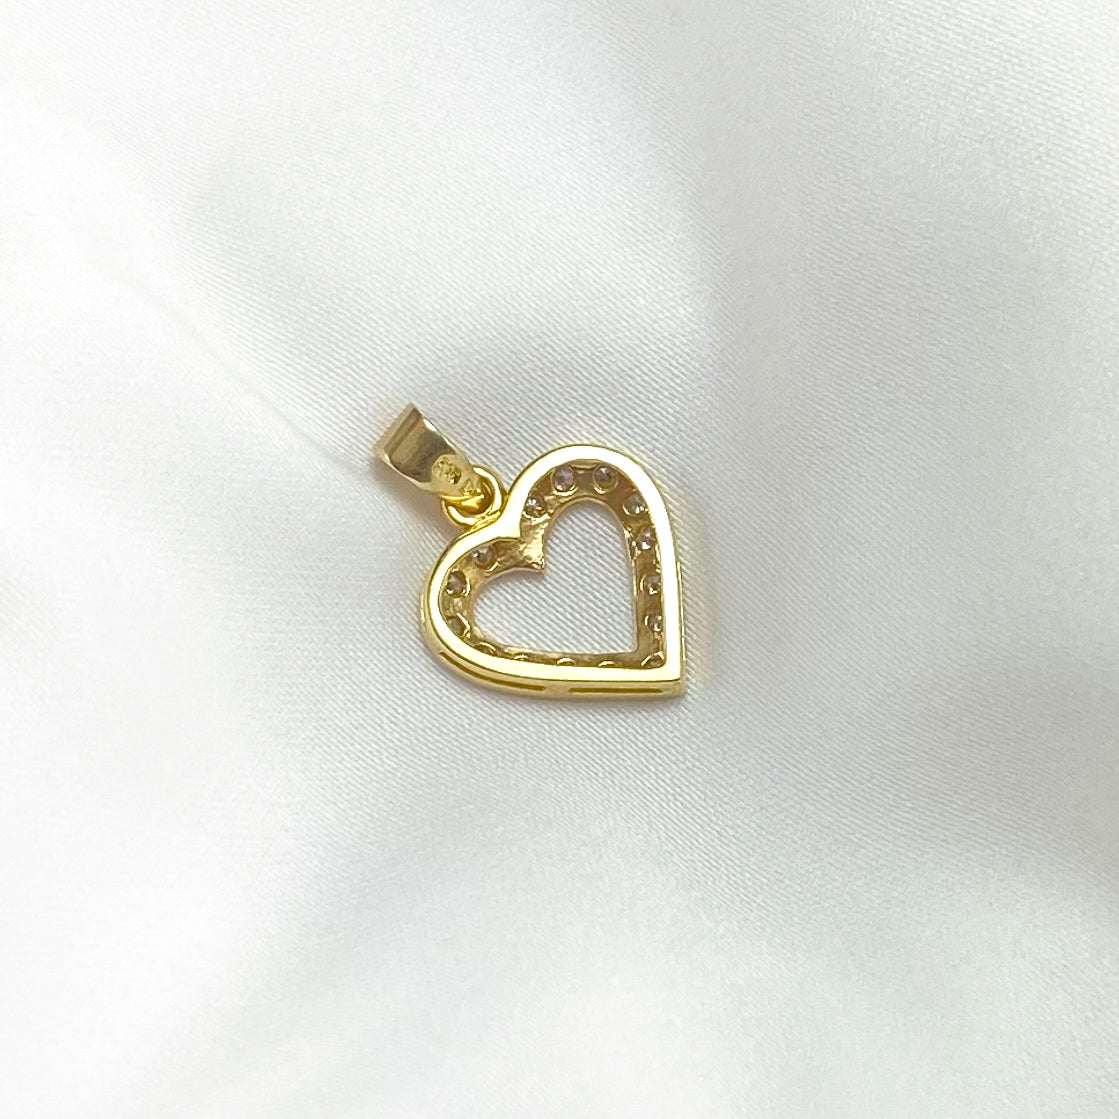 Vintage Diamond Heart Charm